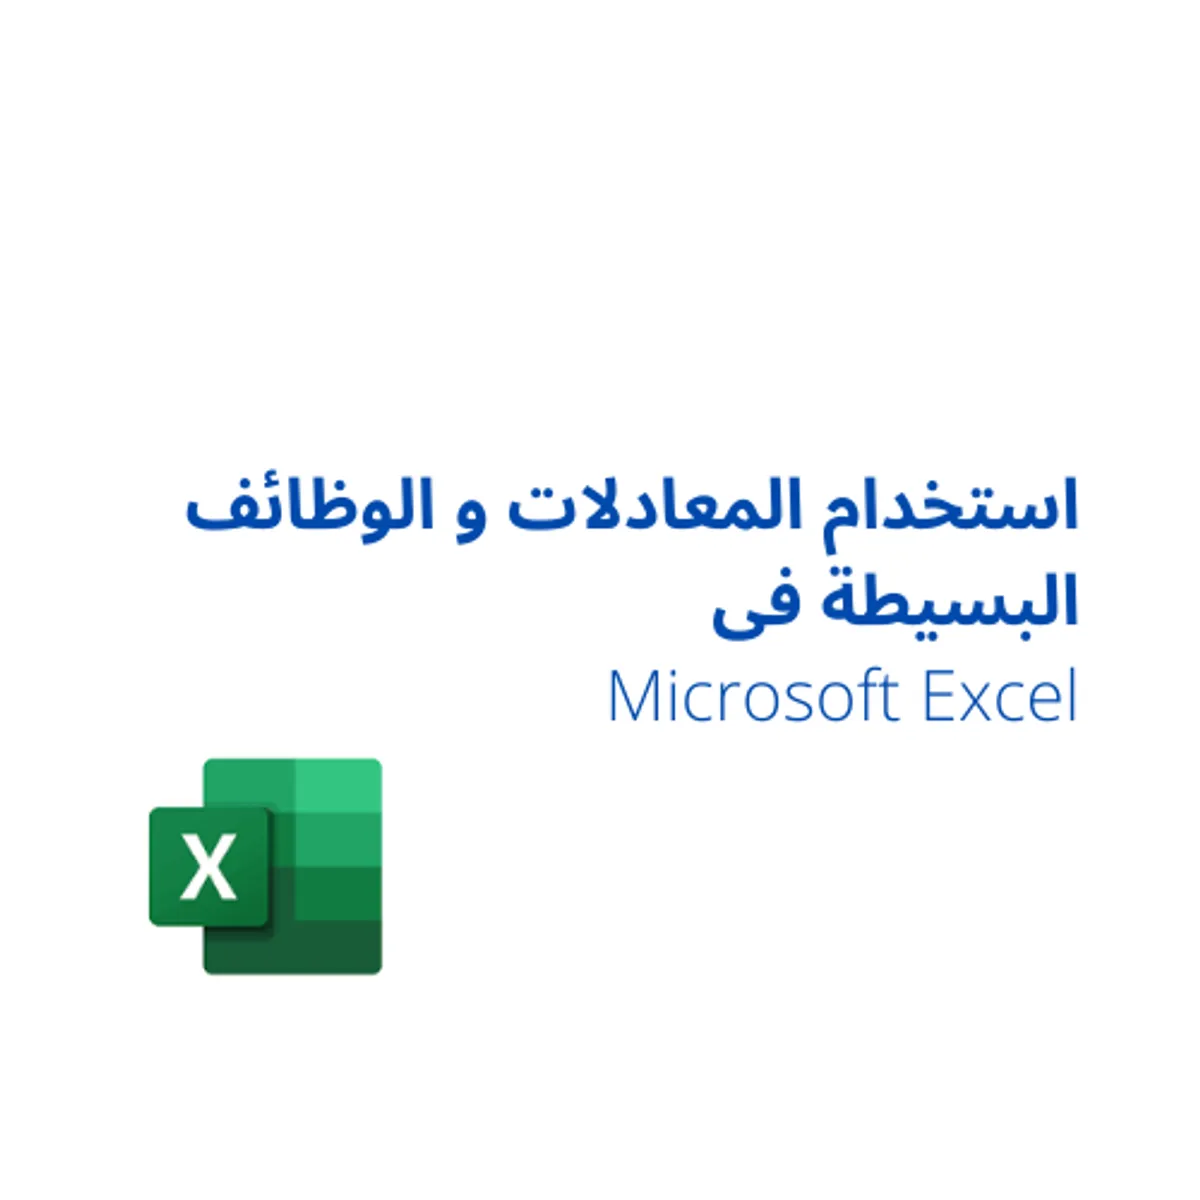 Microsoft Excel استخدام المعادلات و الوظائف البسيطة فى